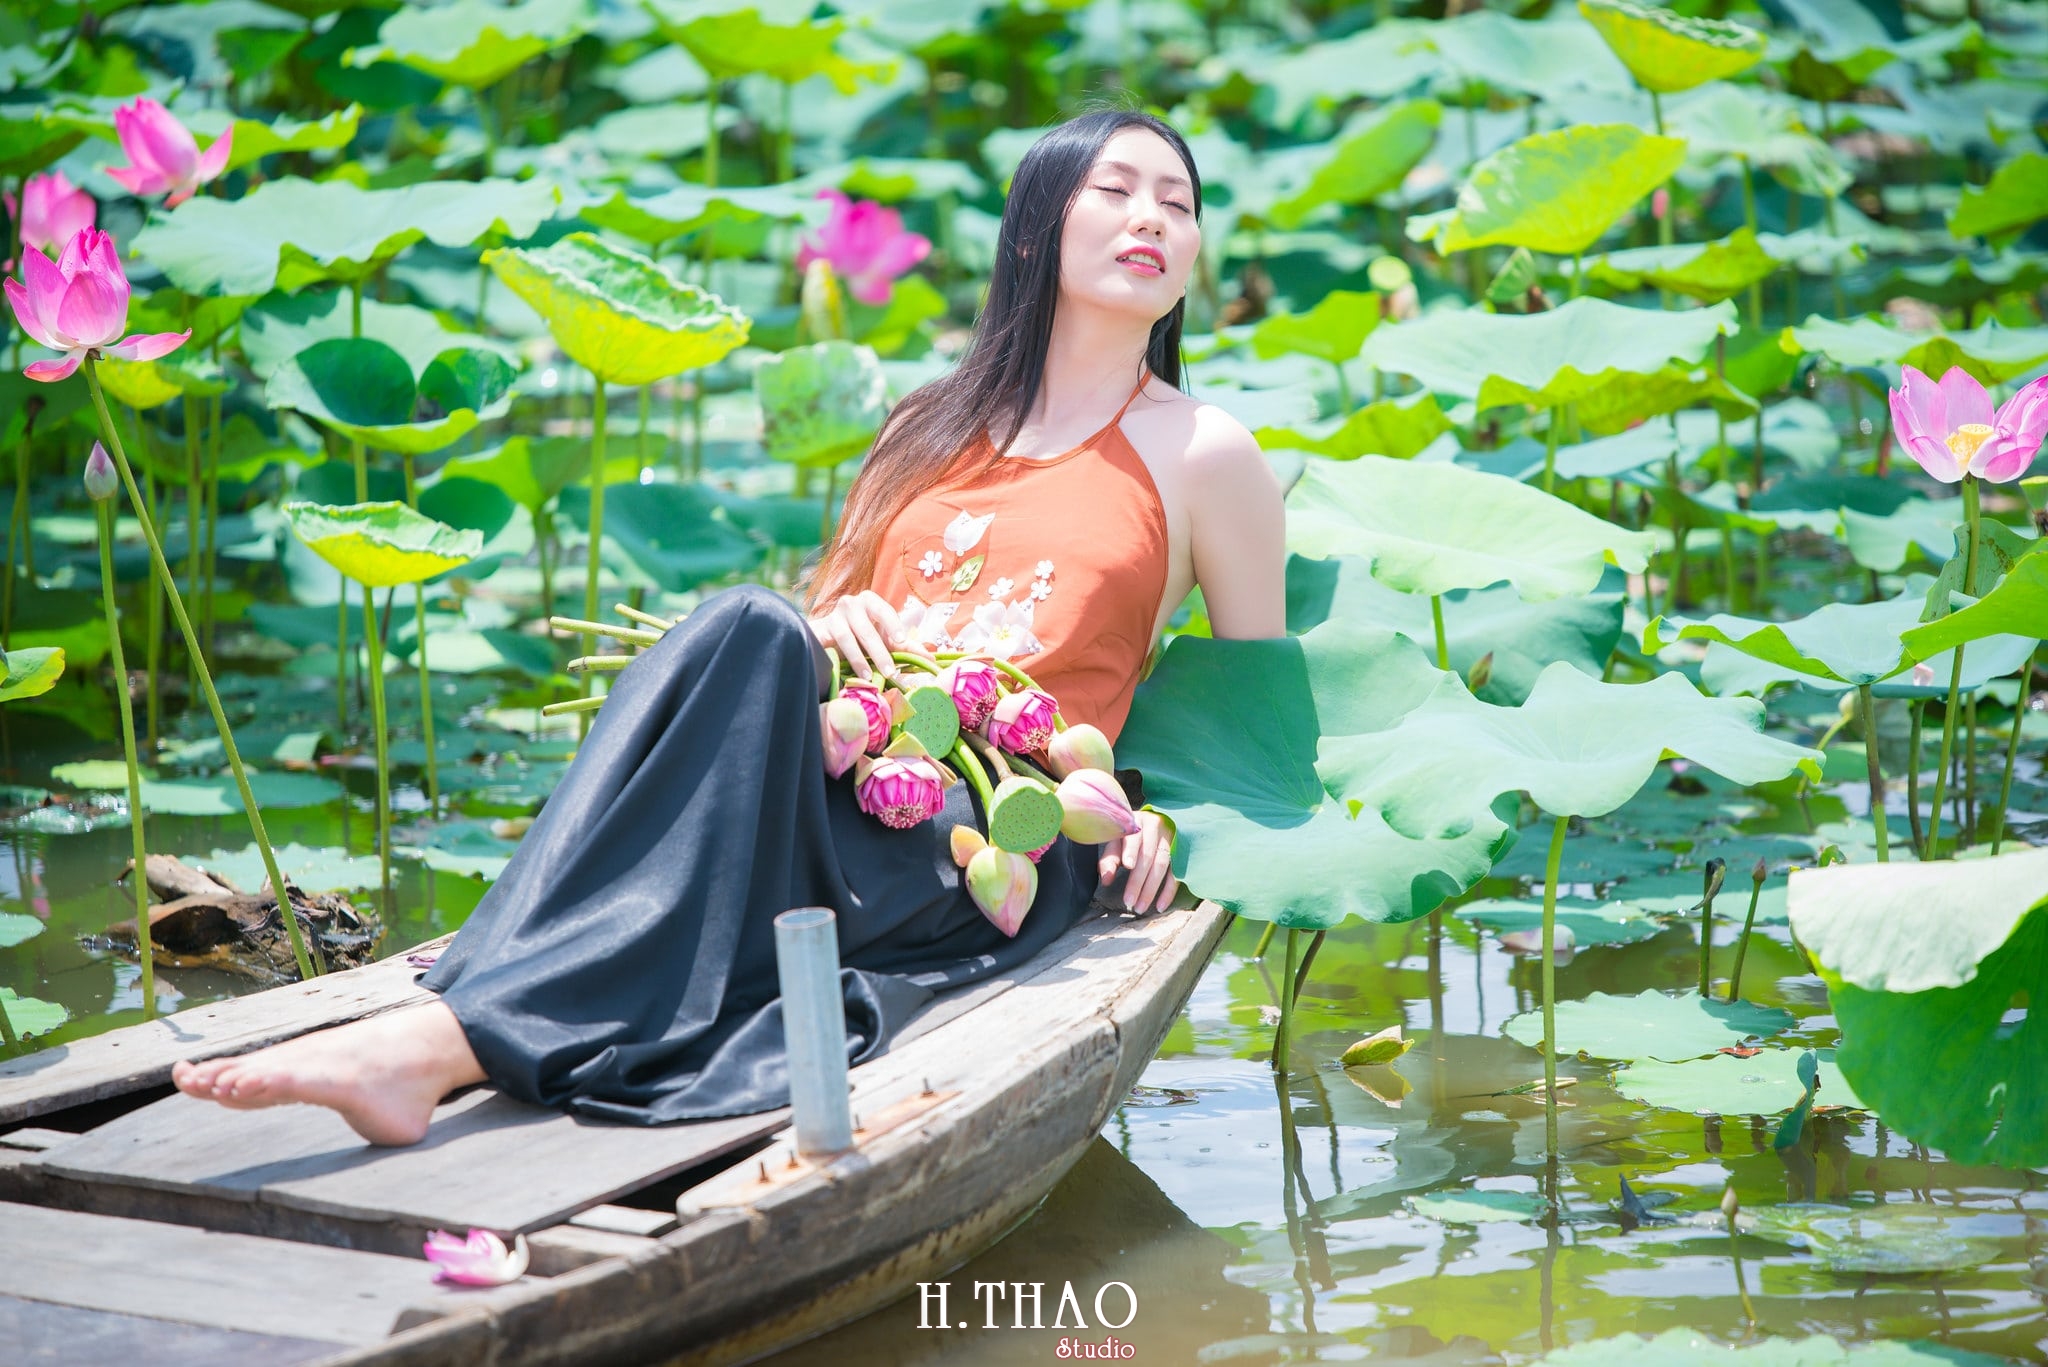 ao yem hoa sen 3 - 39 cách tạo dáng chụp ảnh với hoa sen tuyệt đẹp - HThao Studio